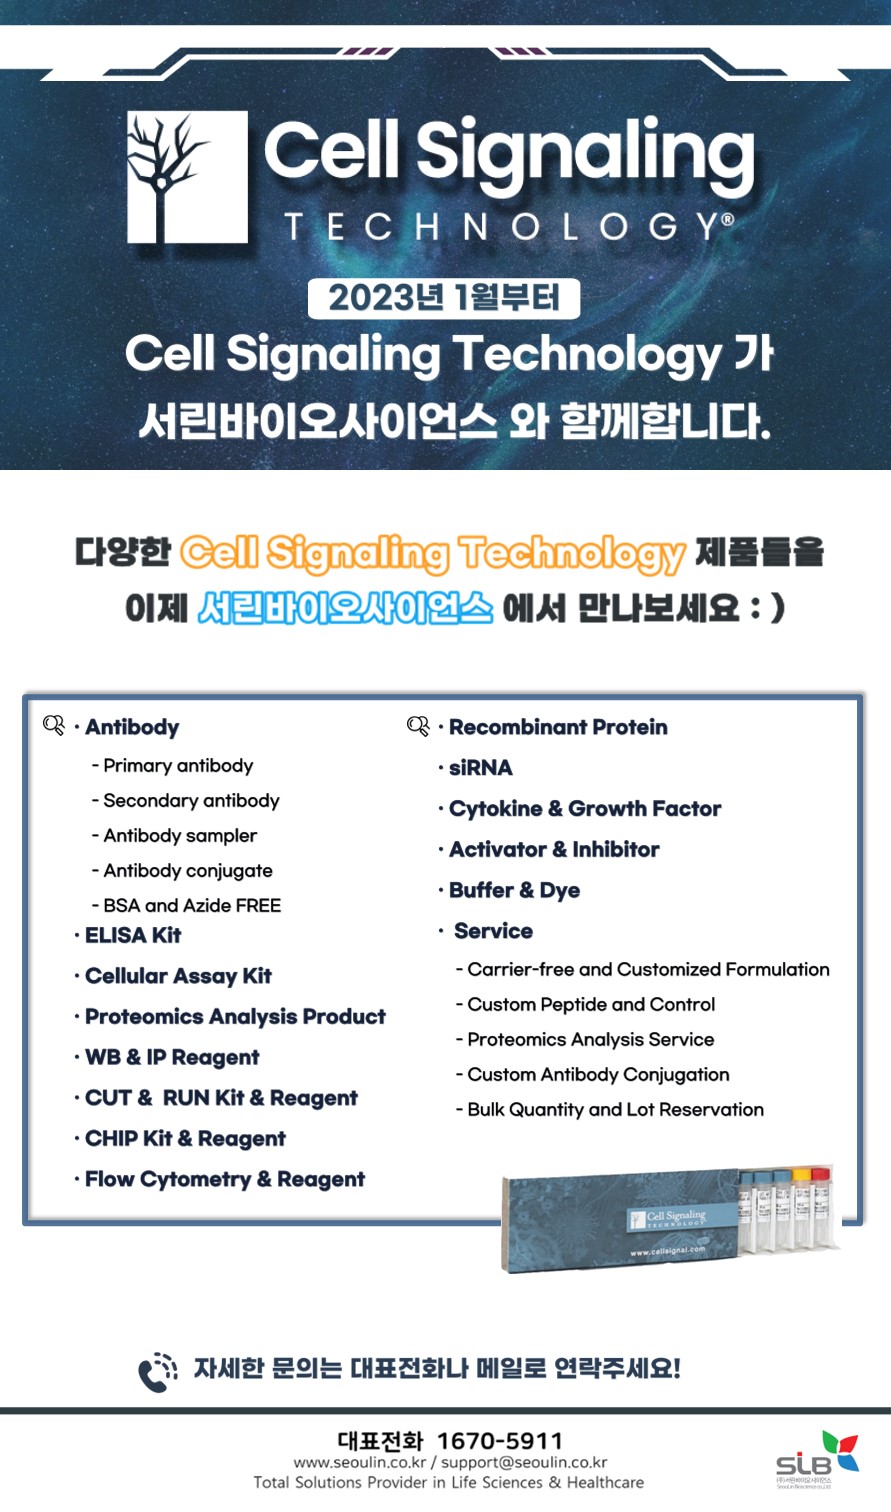 Cell Signaling Technology Calendar 2025